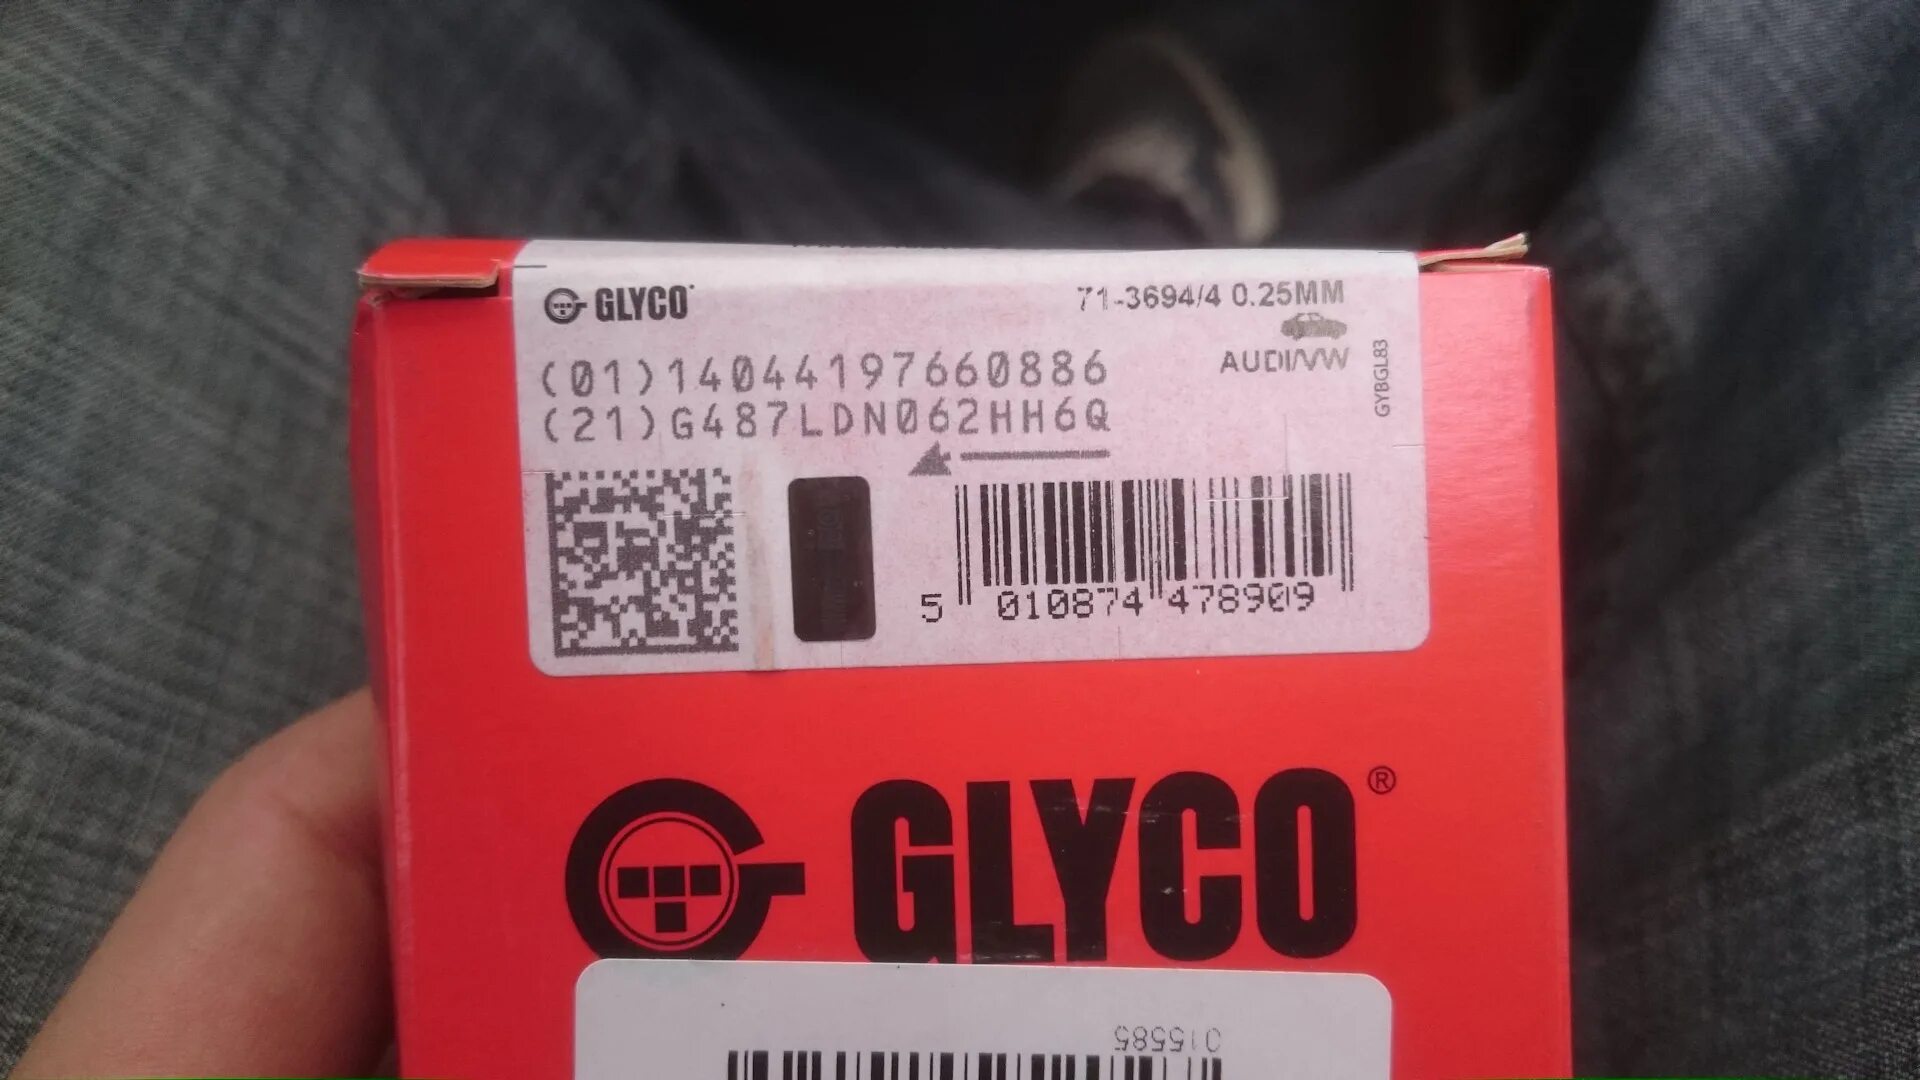 0 25 0 30 мм. GLYCO 71-3694/4 STD. GLYCO номер: 71-3694/4 STD. 71-3694/4 0.25Mm. 71-4118/4 0.25Mm.